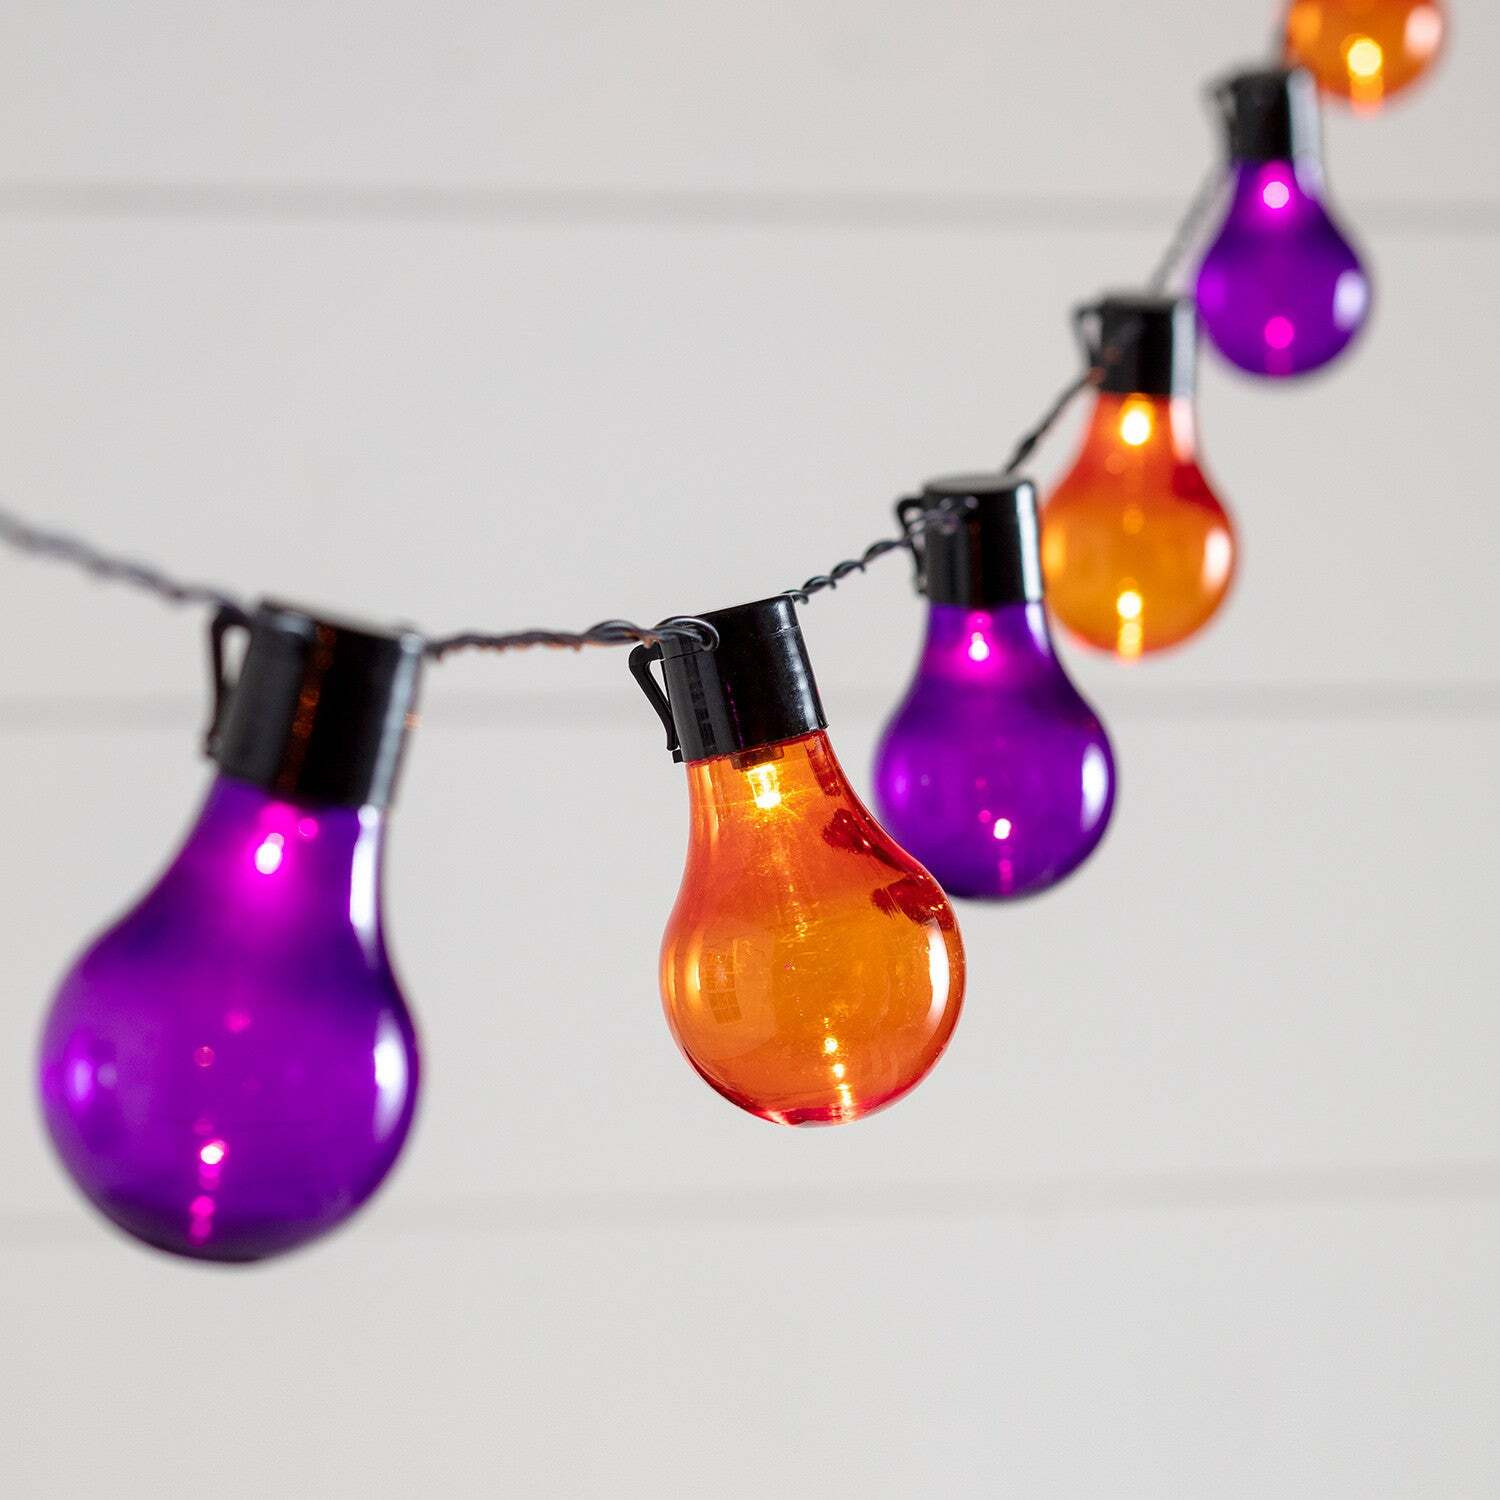 20 Orange & Purple Plug In Festoon Lights - image 1